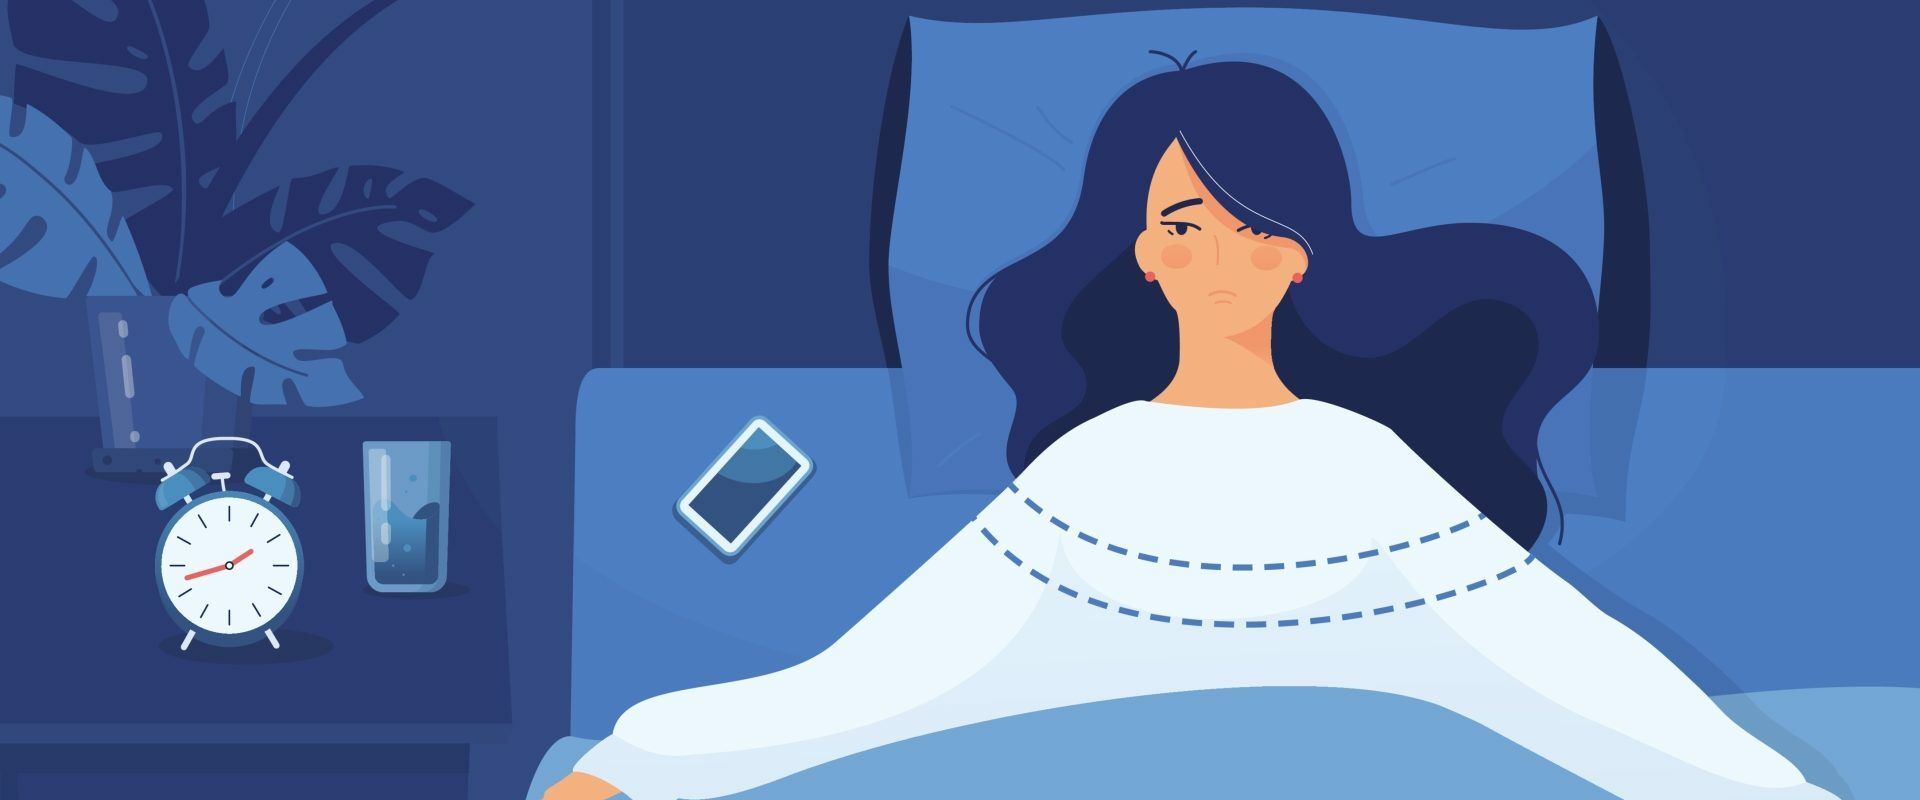 Jak leczyć bezsenność? Kto cierpi na problemy ze snem? Grafika przedstawia kobietę leżącą w łóżku, która nie może zasnąć.